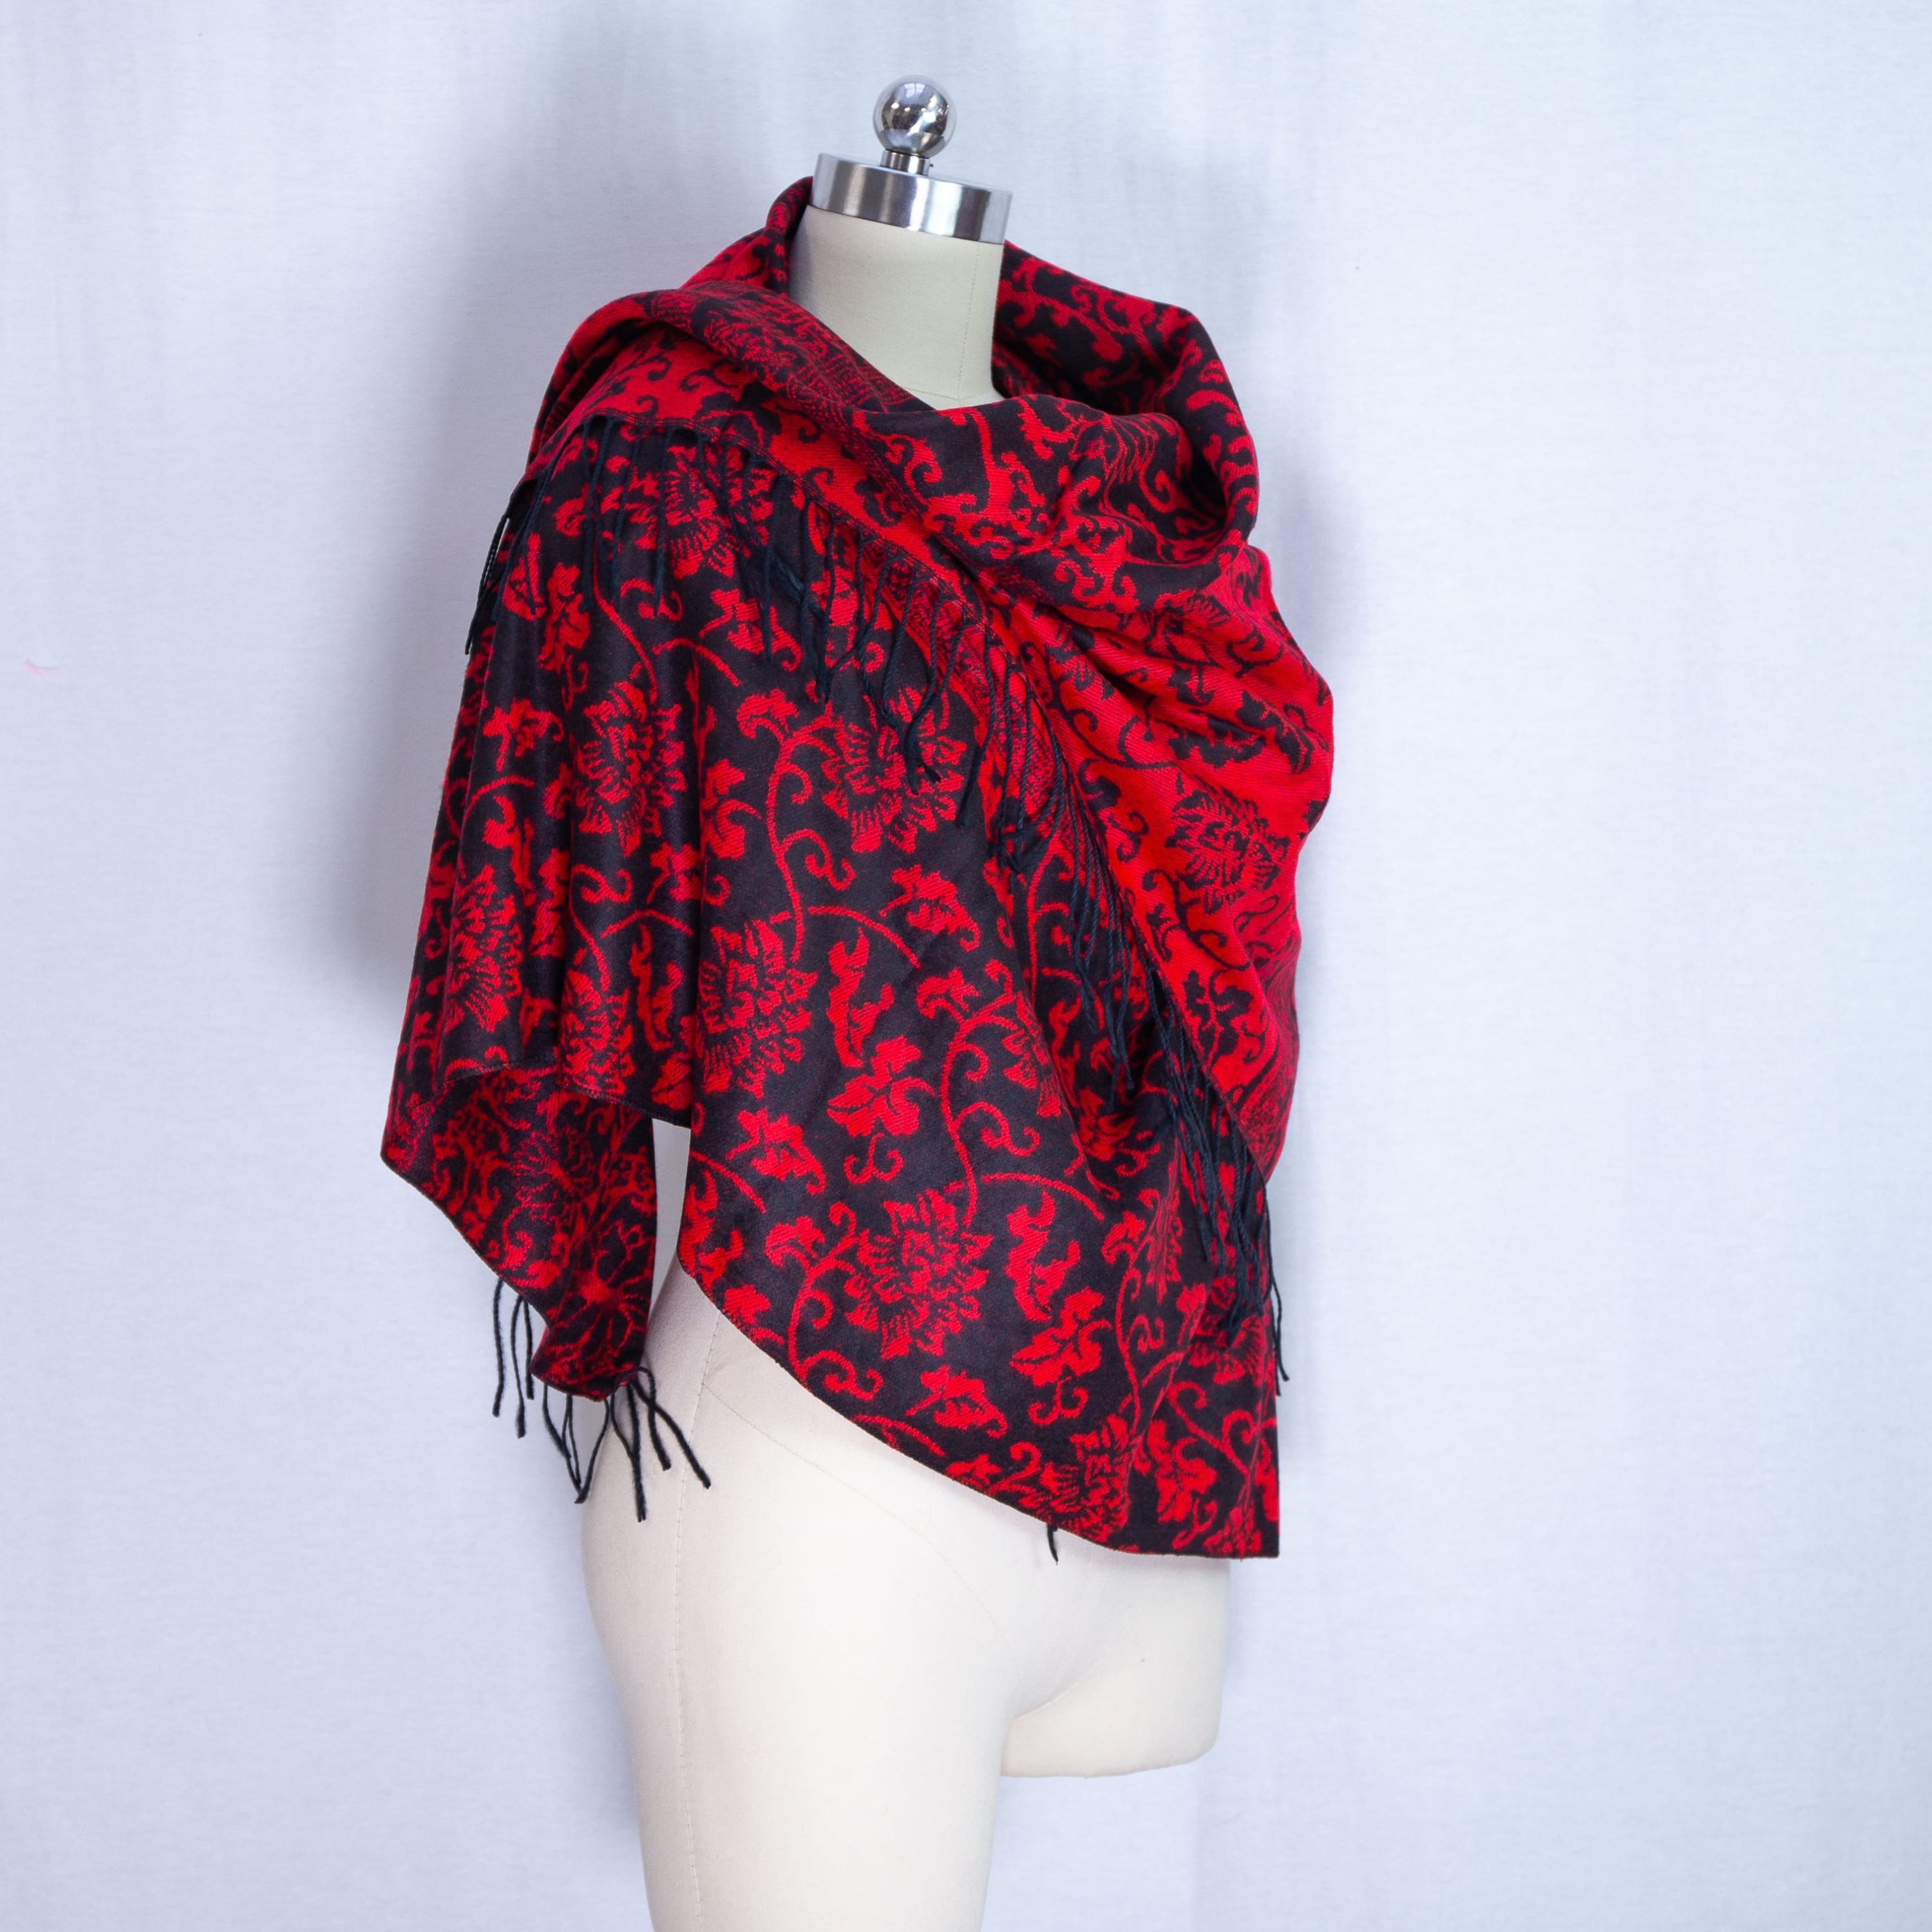 Large shawl cashmere pashmina - shawl